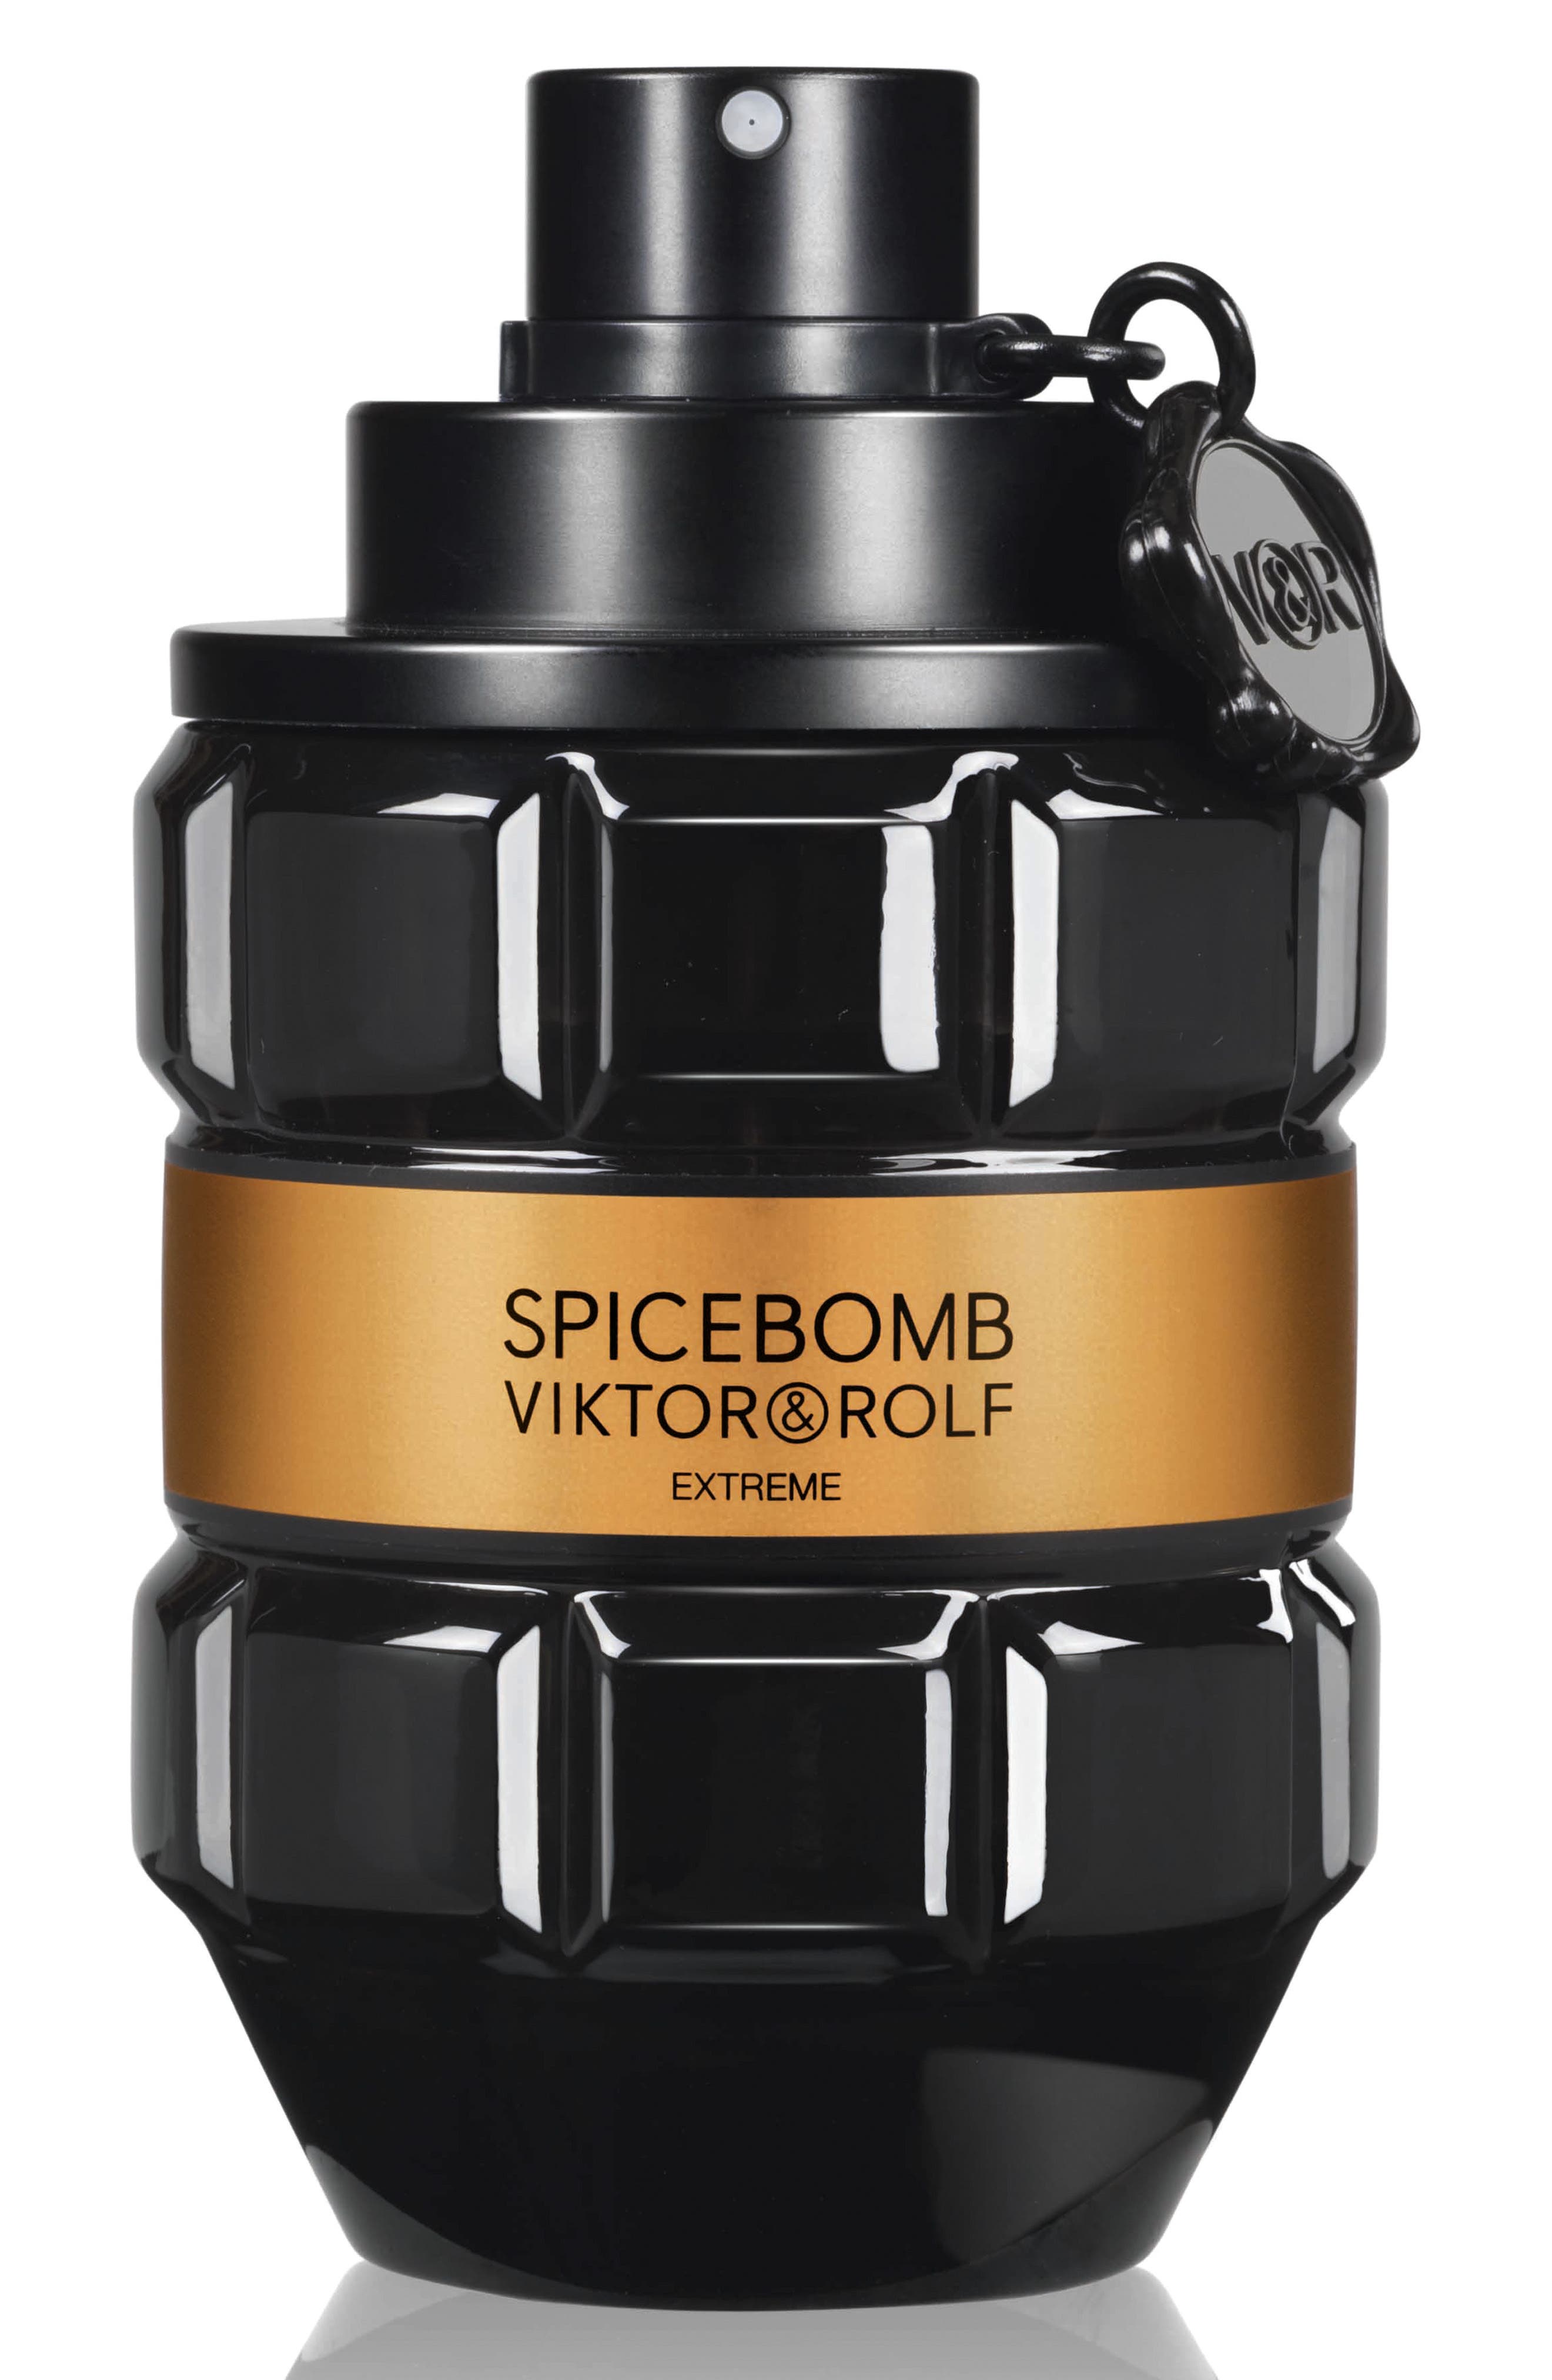 Viktor & Rolf Spicebomb Extreme Eau de Parfum Fragrance at Nordstrom